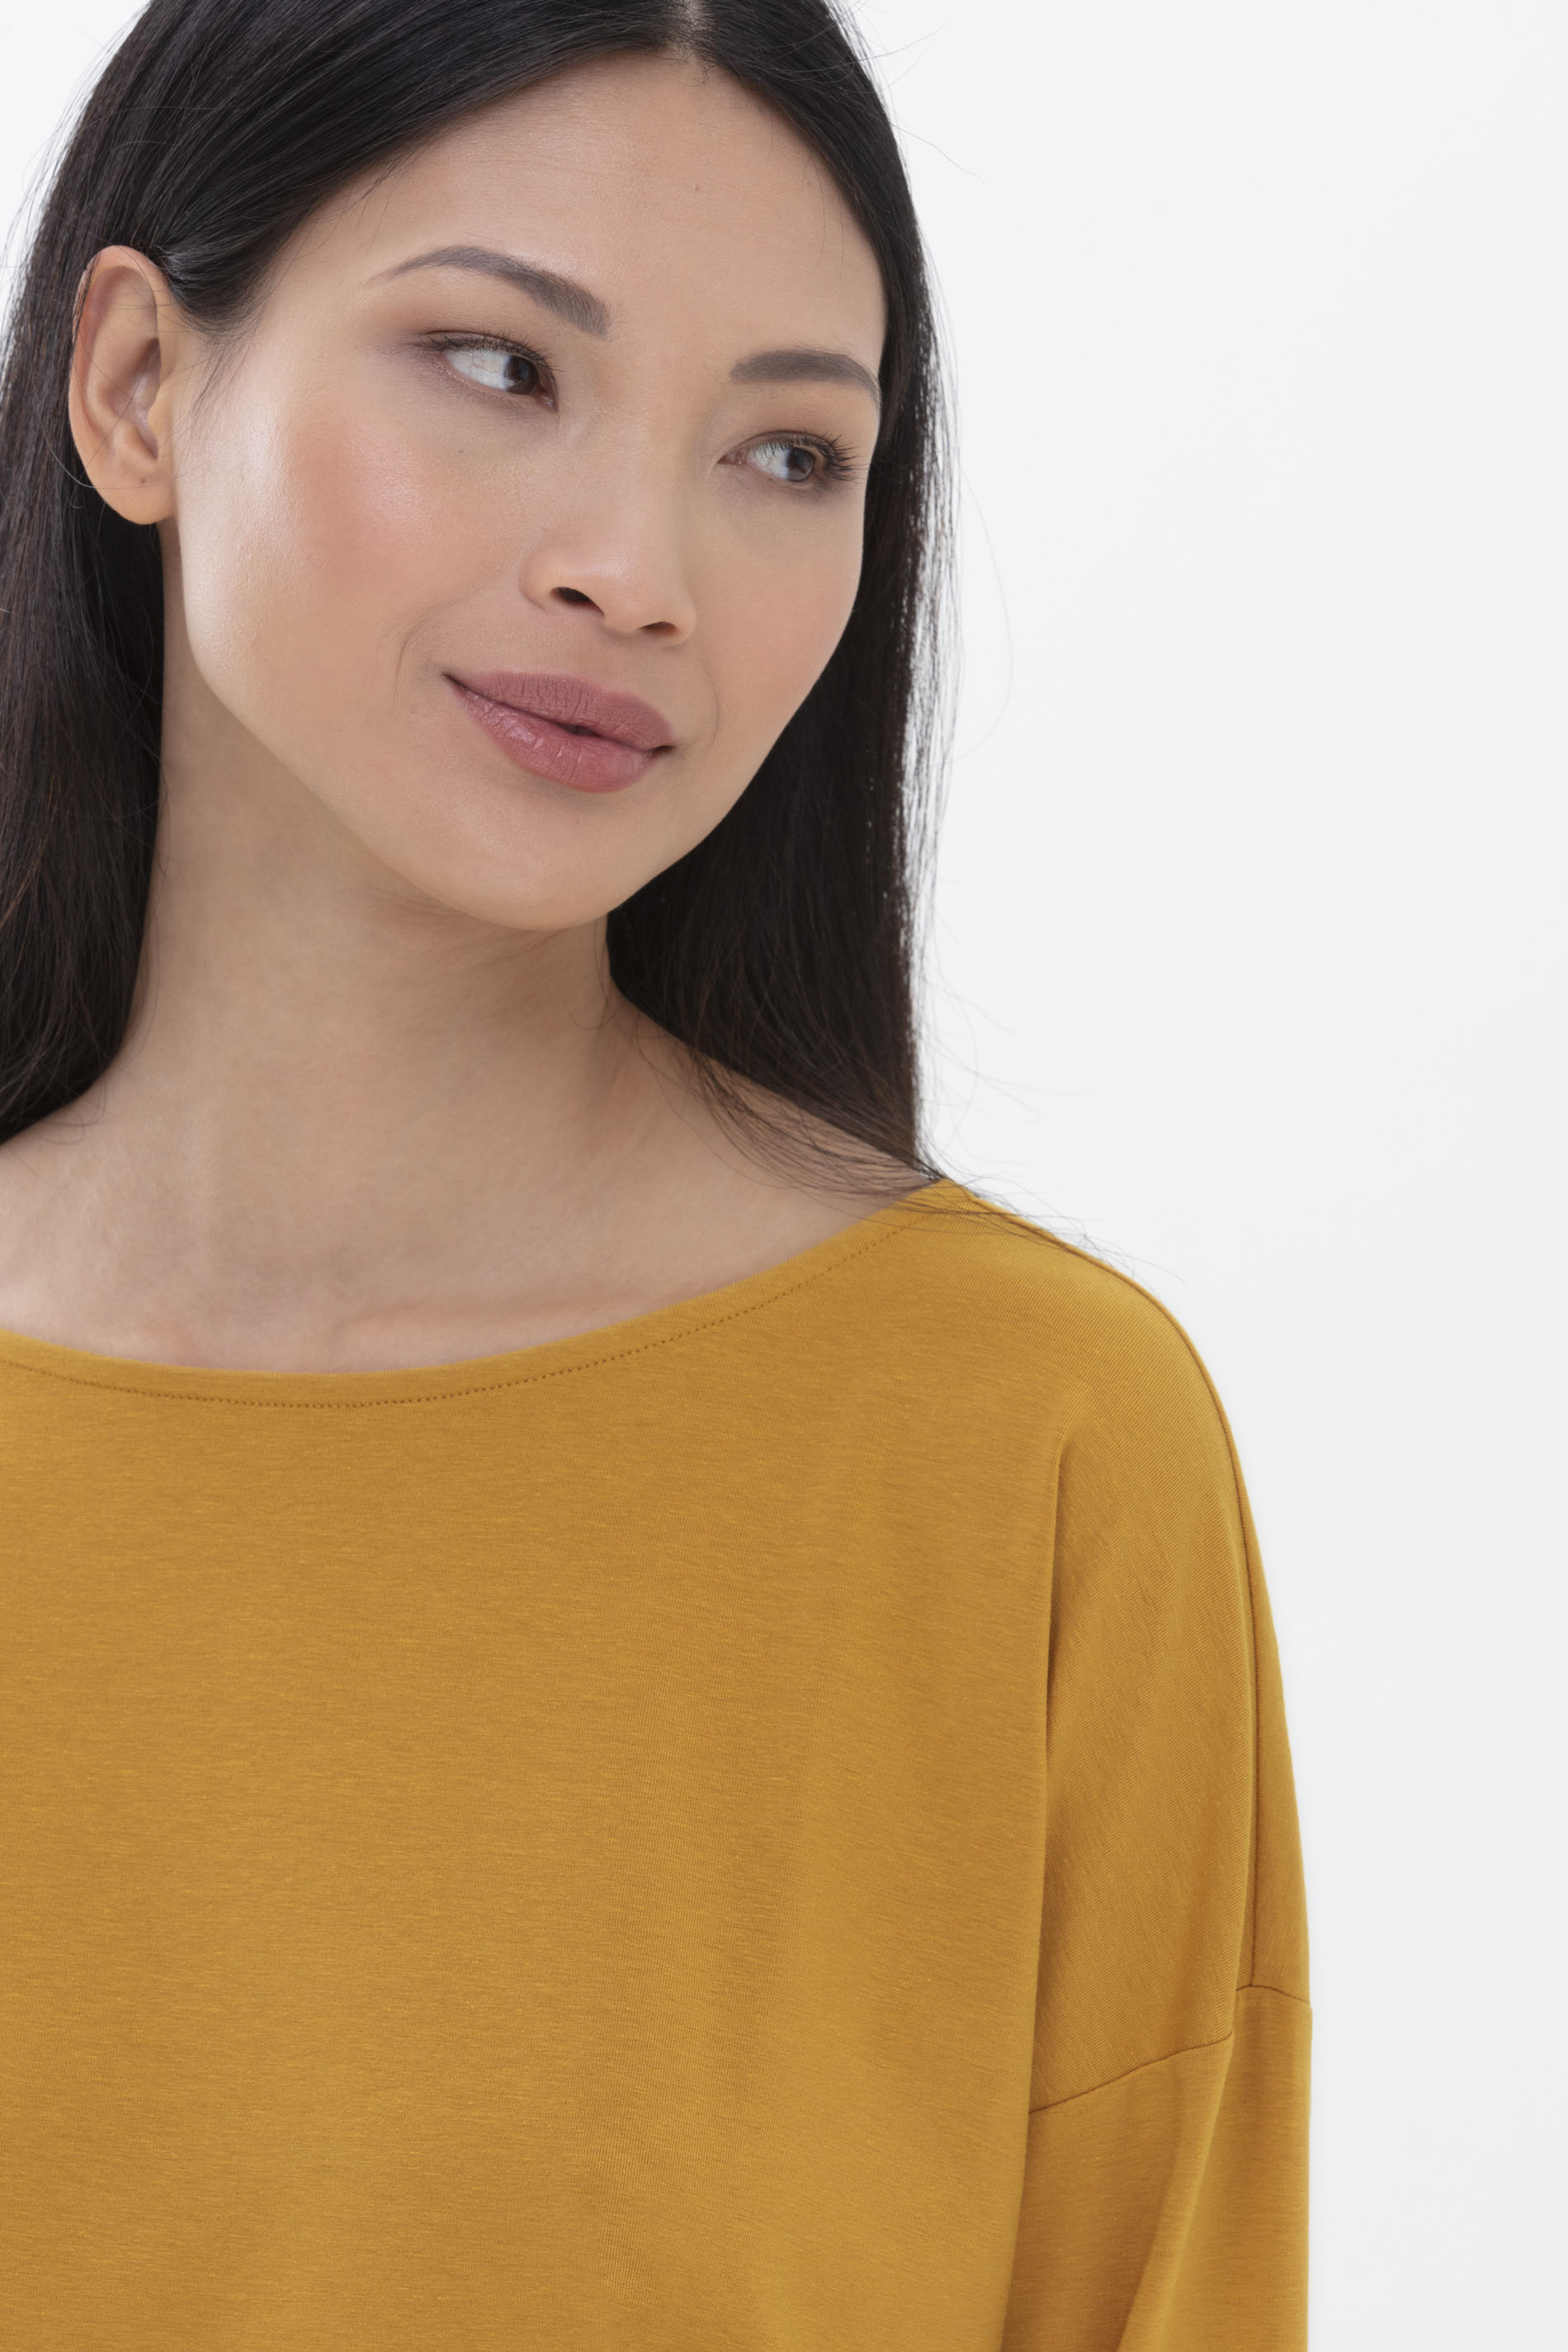 Long-sleeved shirt Wintergold Serie Aya Detail View 01 | mey®